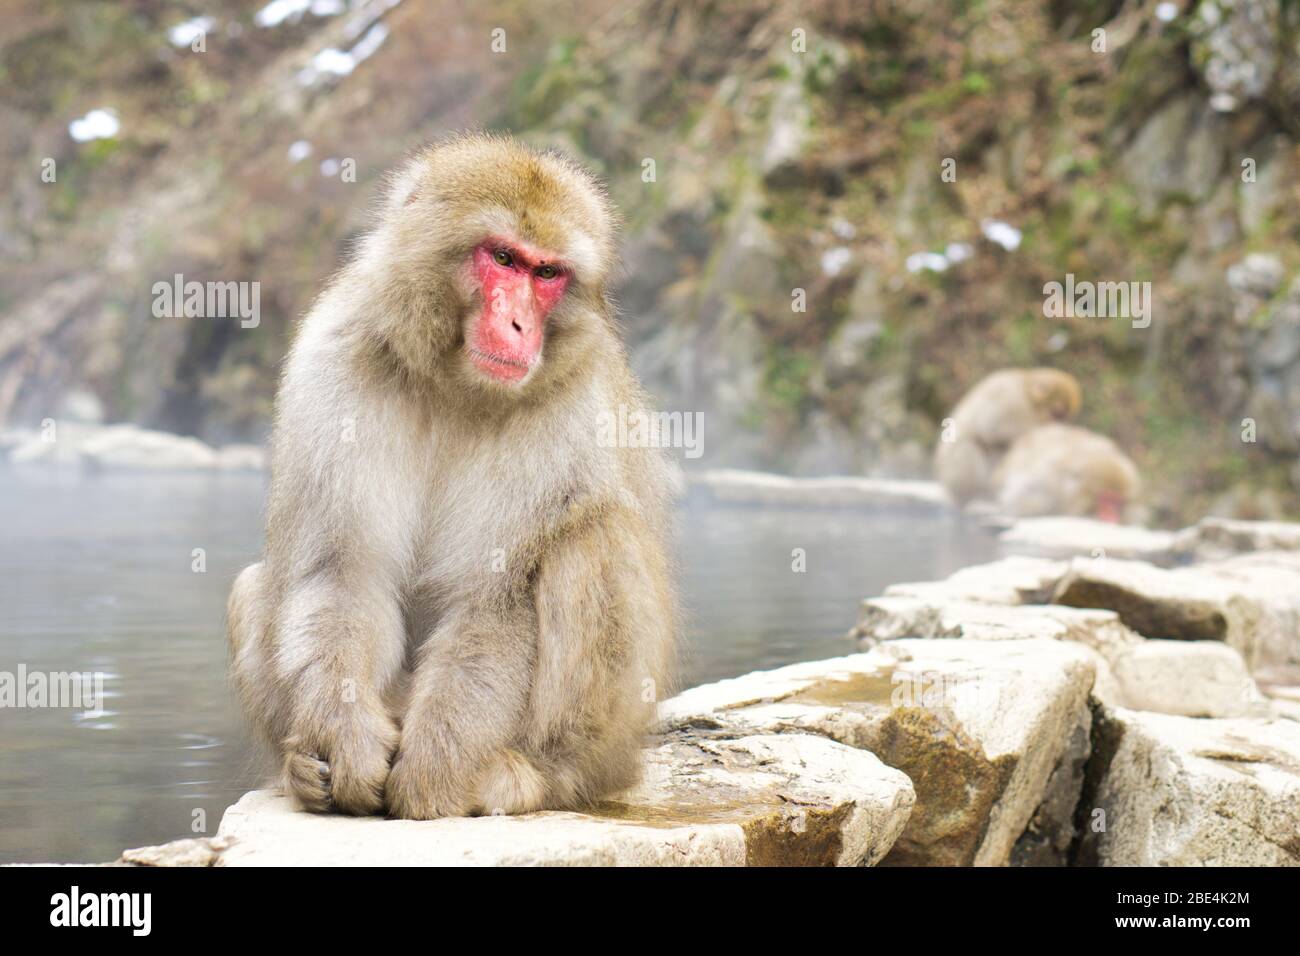 El parque de monos Jigokudani ofrece a los visitantes la experiencia única de ver monos salvajes bañándose en un manantial natural. El parque tiene una piscina artificial. Foto de stock